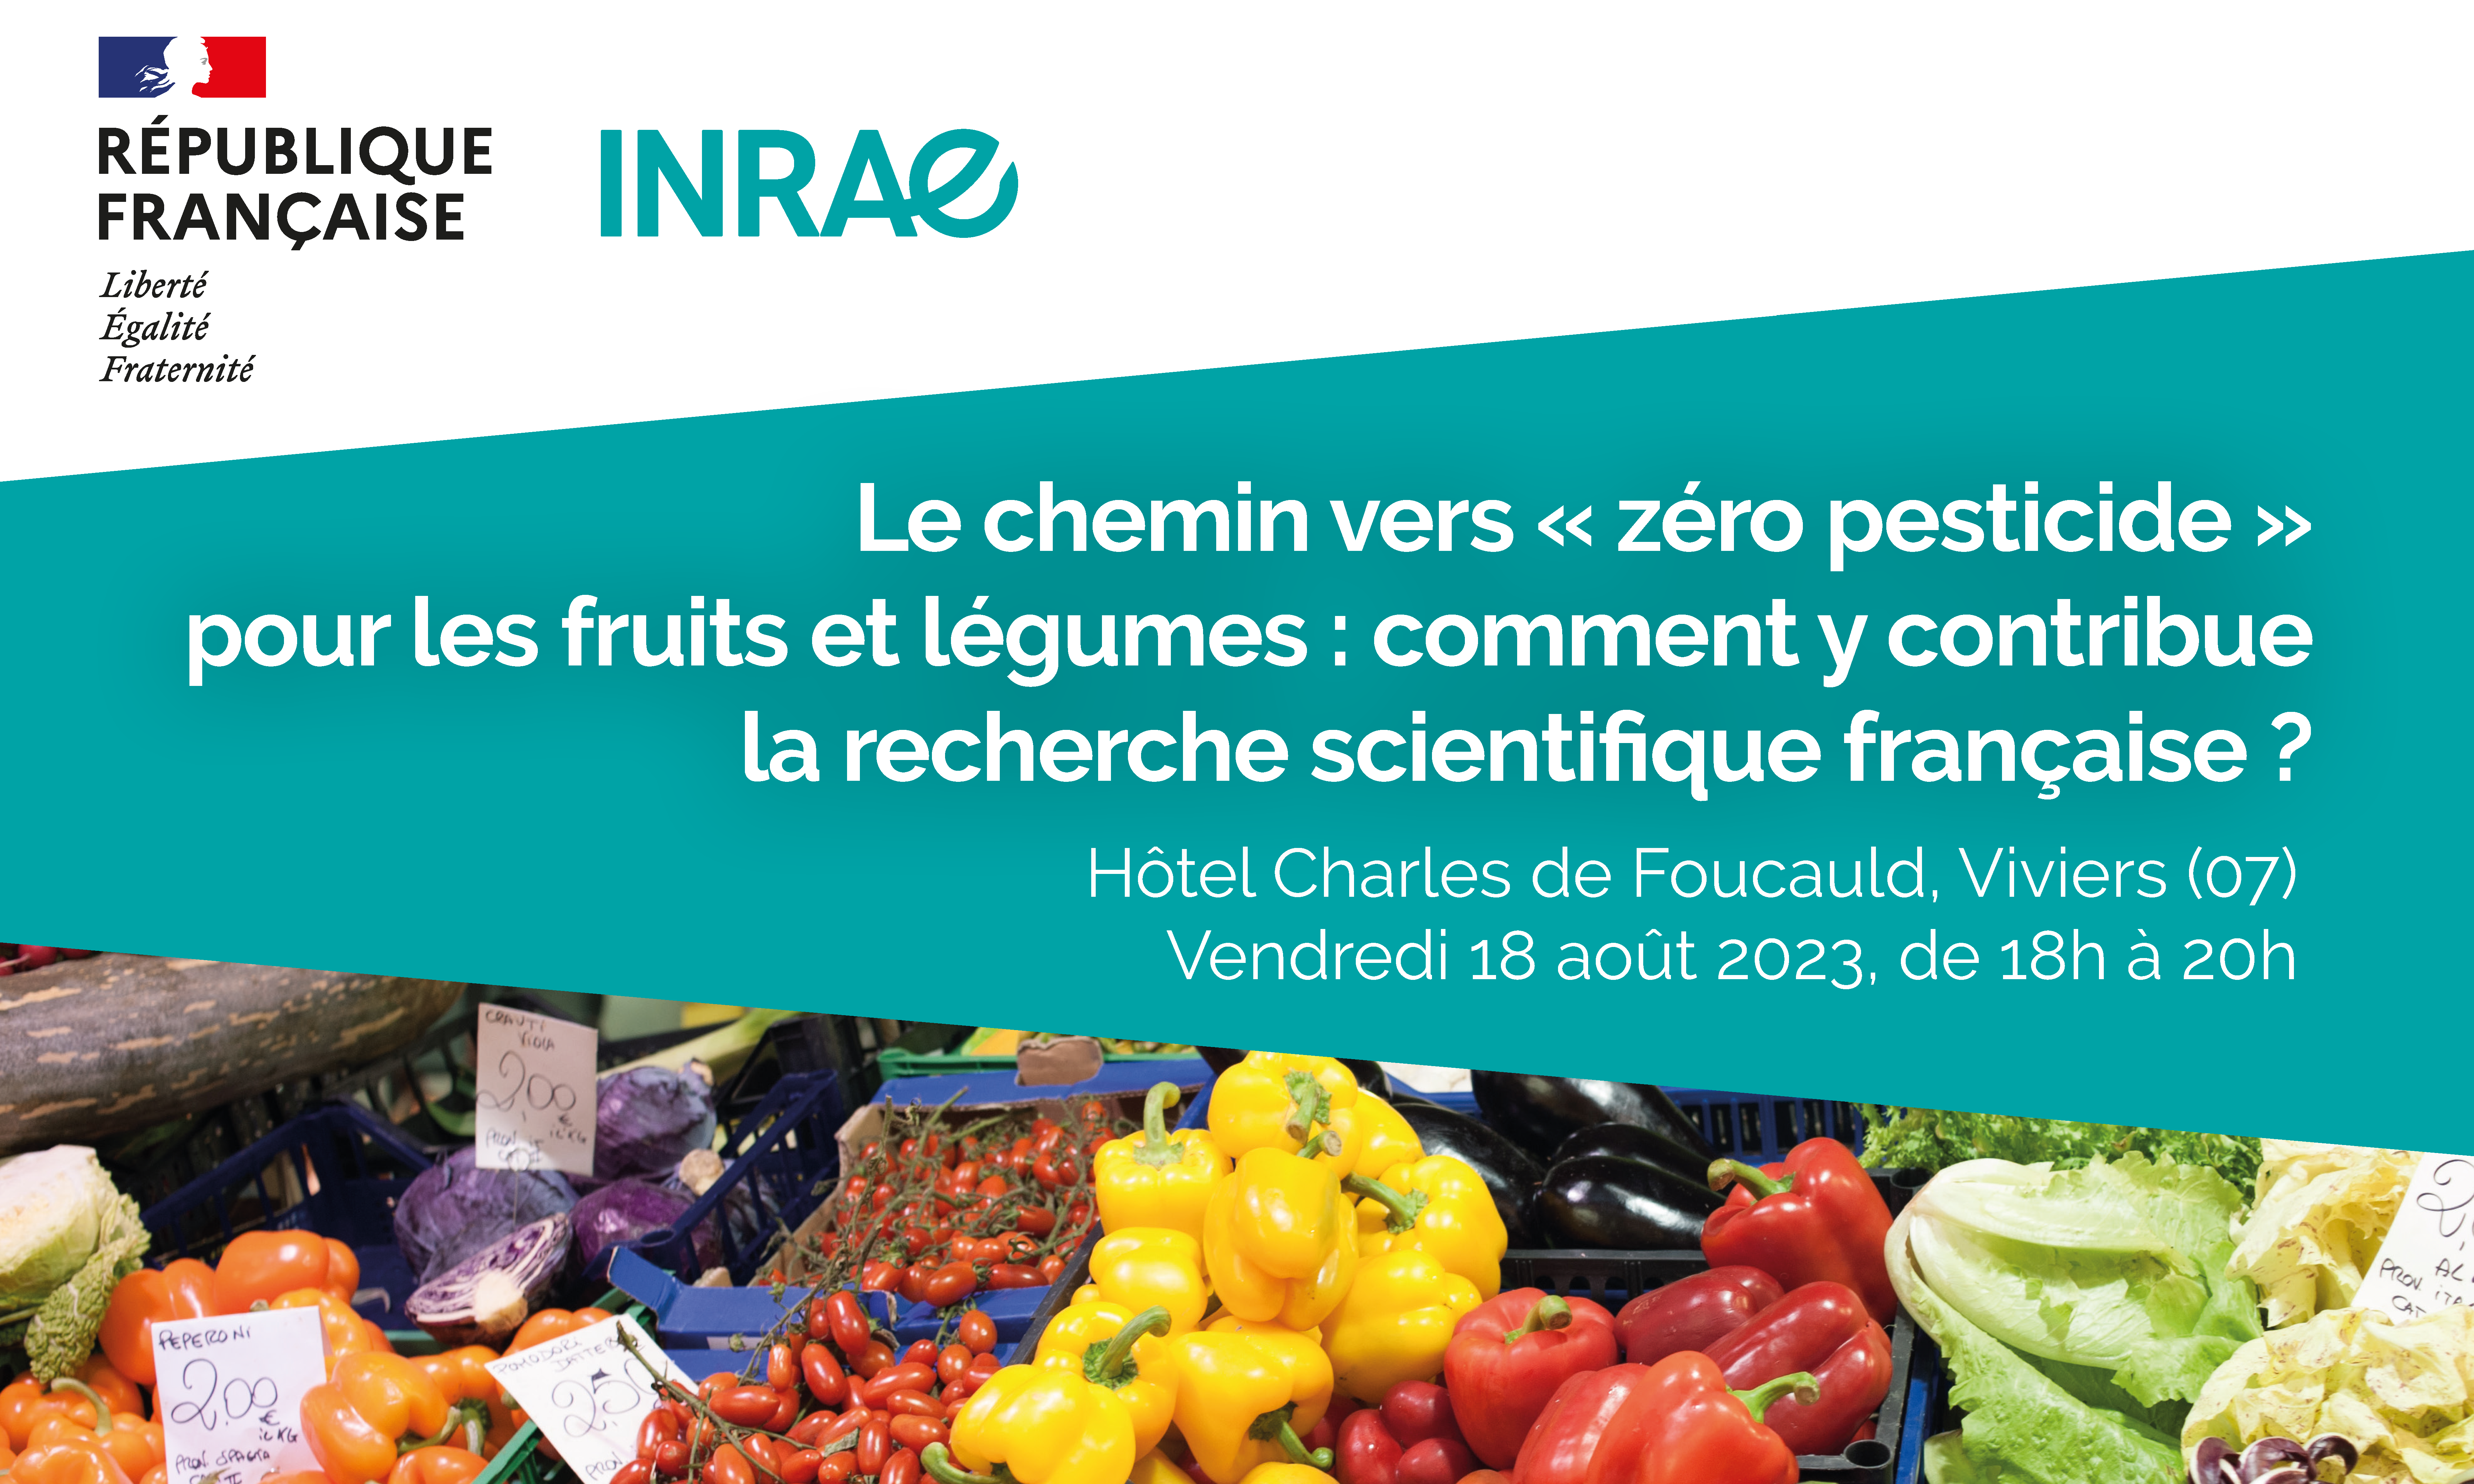 [EVENT] Le chemin vers "zéro pesticides" pour les fruits & légumes : Comment la recherche scientifique française y contribue ?